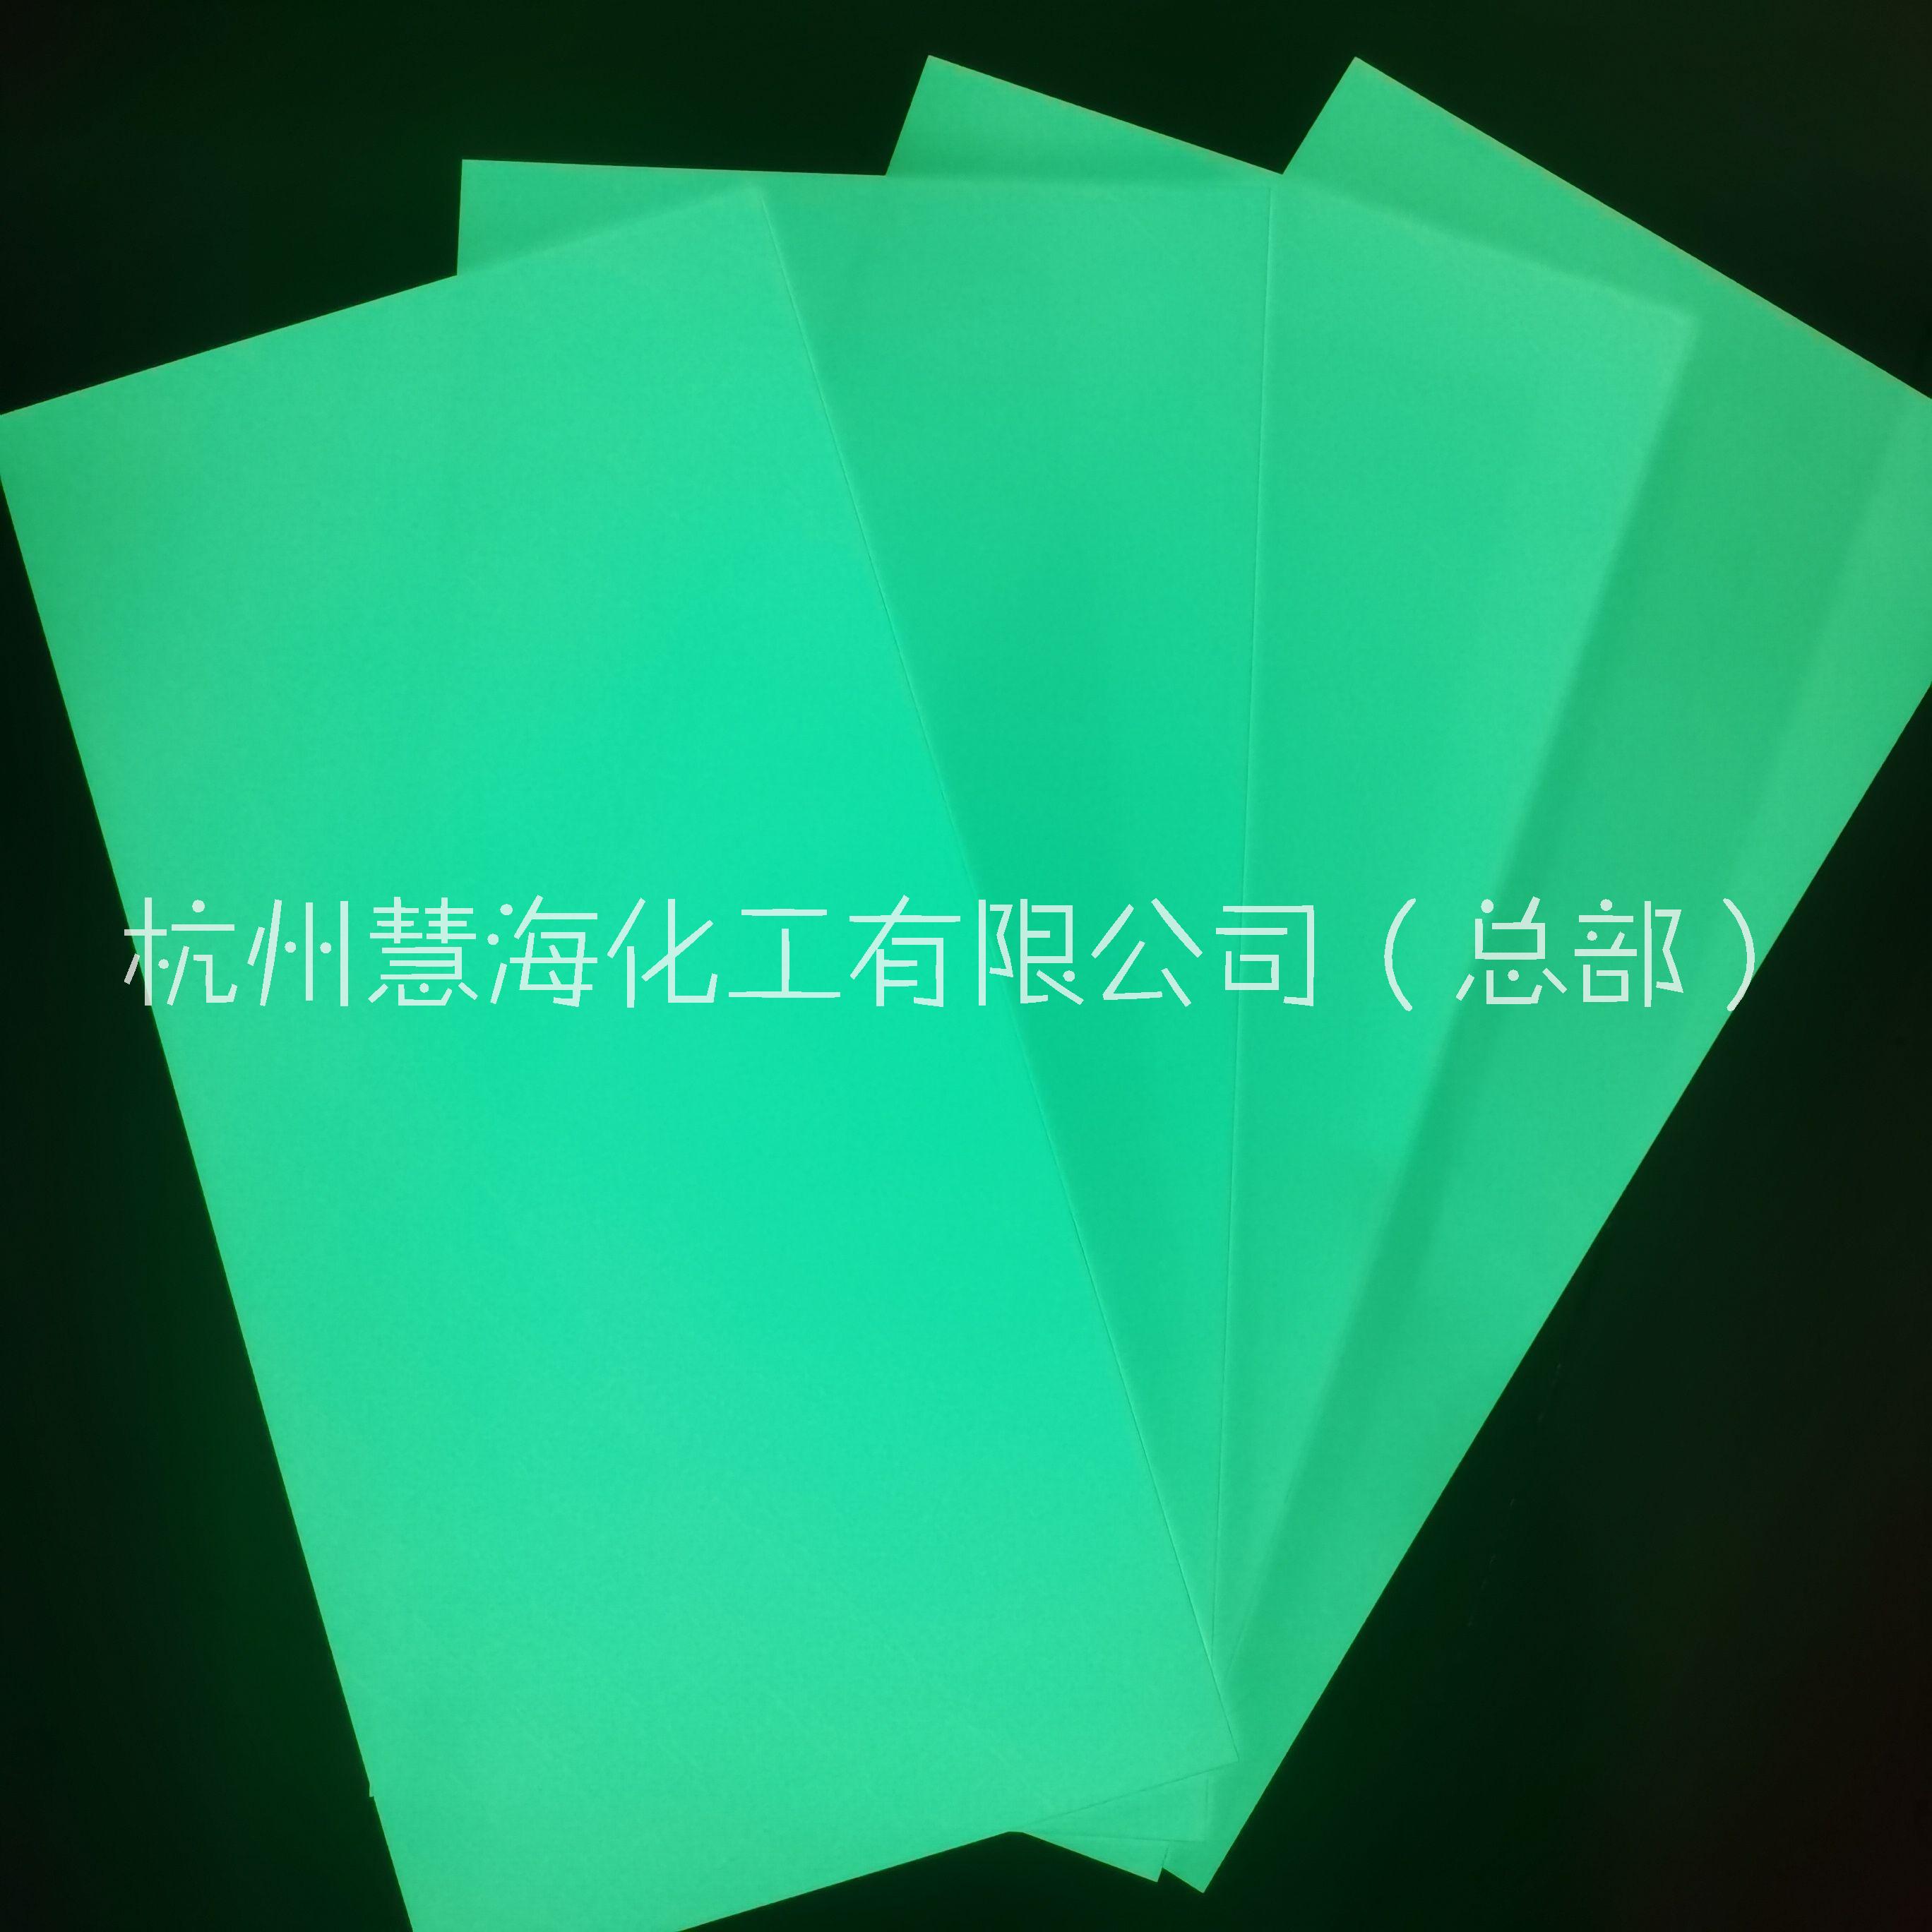 杭州市慧海供应 高亮度夜光板硬质的发光板材蓄光自发光PVC厂家慧海供应 高亮度夜光板硬质的发光板材蓄光自发光PVC